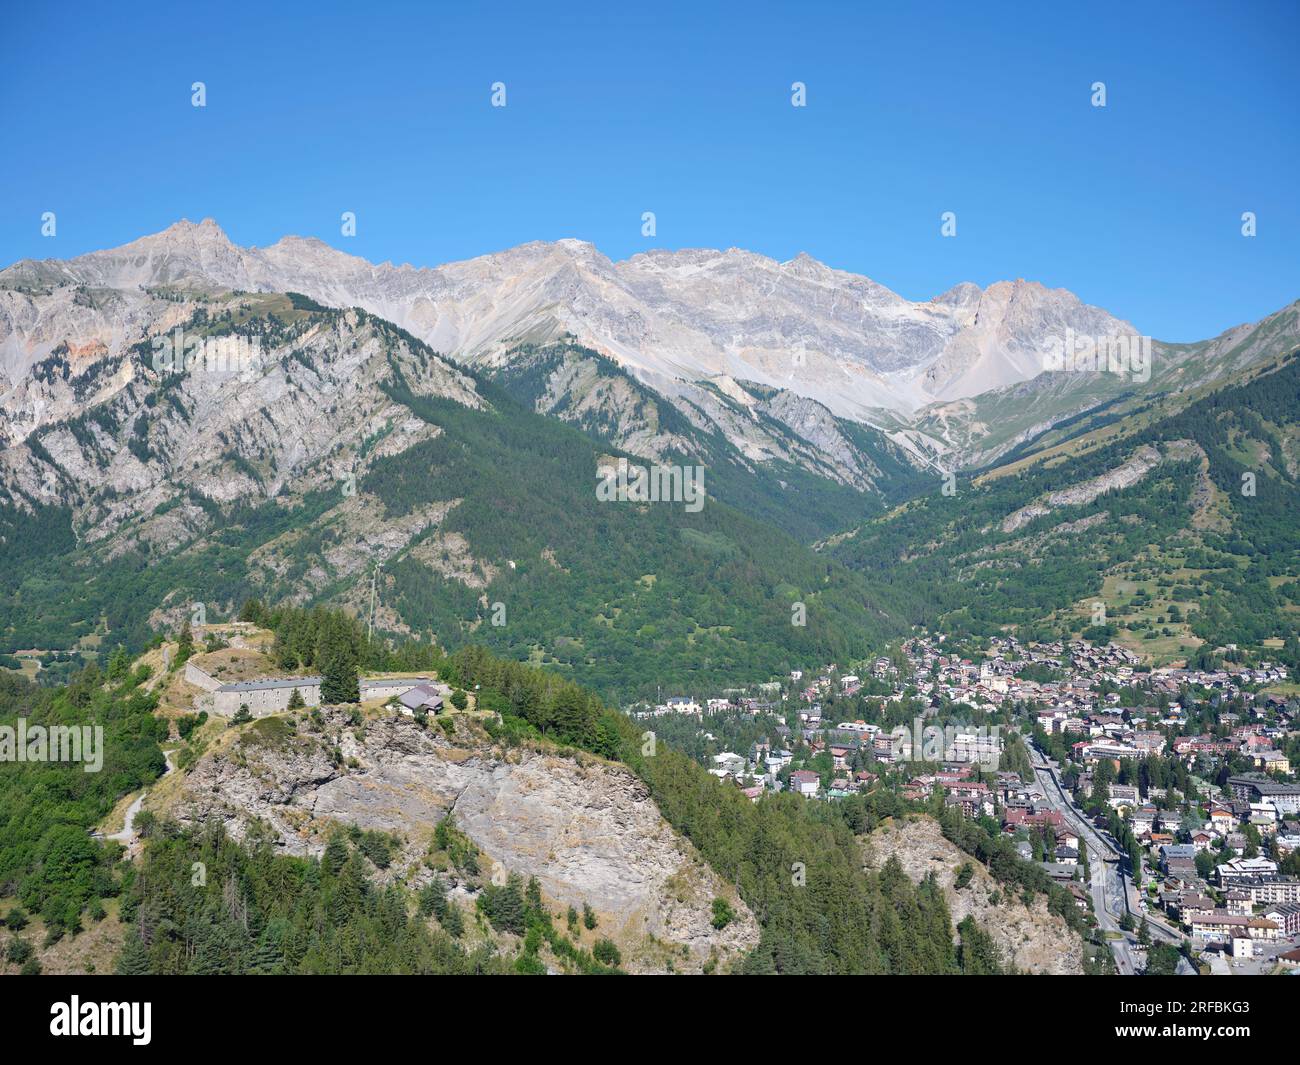 VUE AÉRIENNE. La ville de Bardonecchia dans la vallée de Susa avec Rocca Bernauda (3225m) au loin et le fort de Bramafam sur la gauche. Piémont, Italie. Banque D'Images